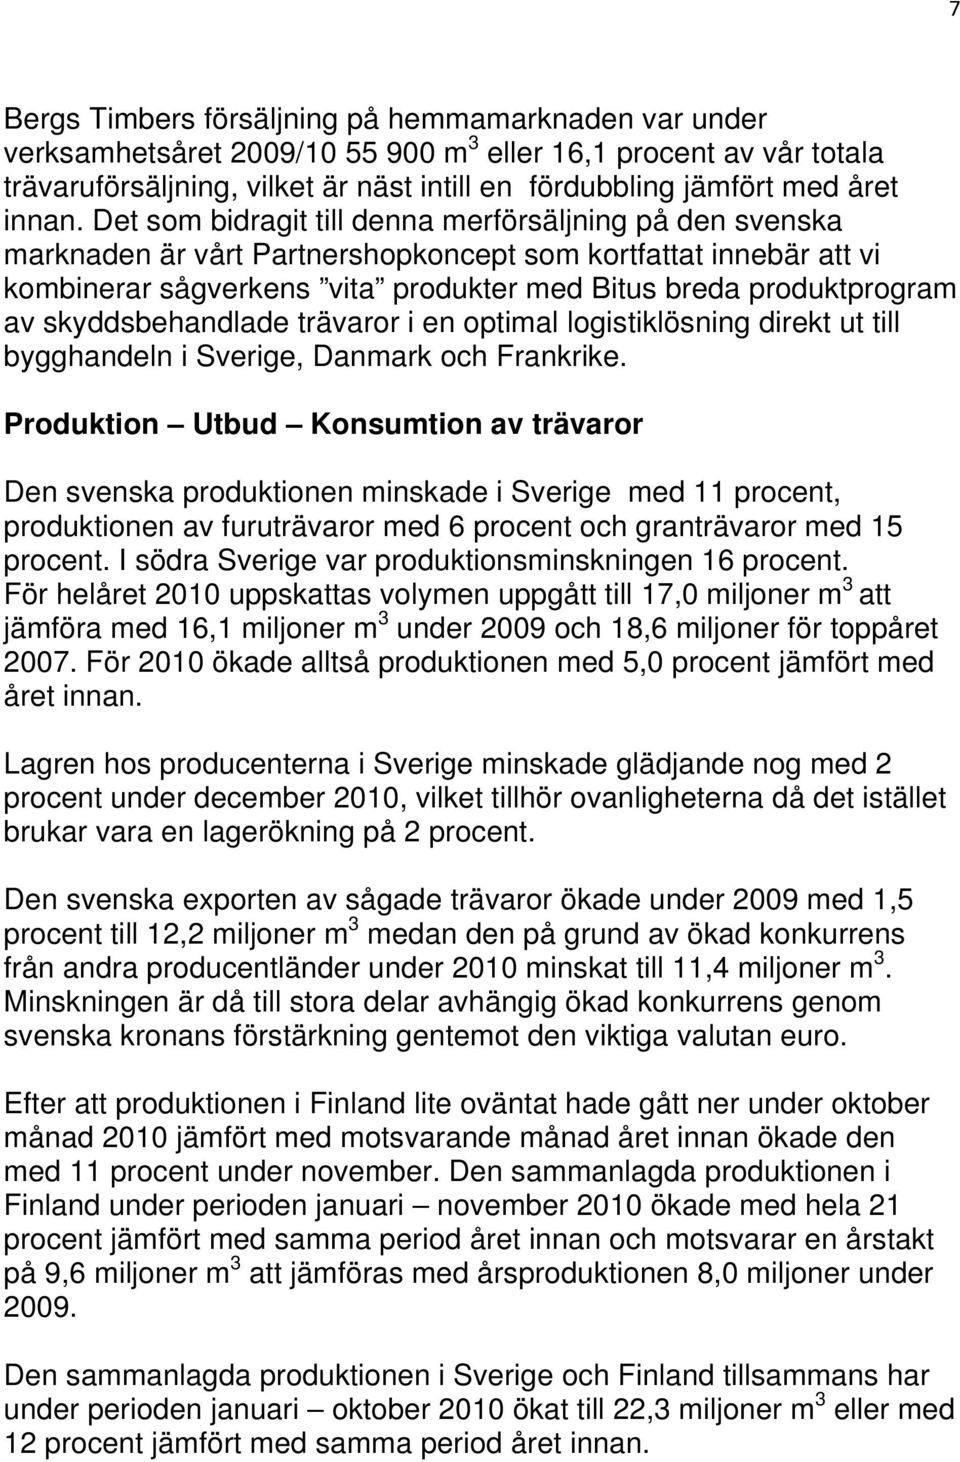 Det som bidragit till denna merförsäljning på den svenska marknaden är vårt Partnershopkoncept som kortfattat innebär att vi kombinerar sågverkens vita produkter med Bitus breda produktprogram av